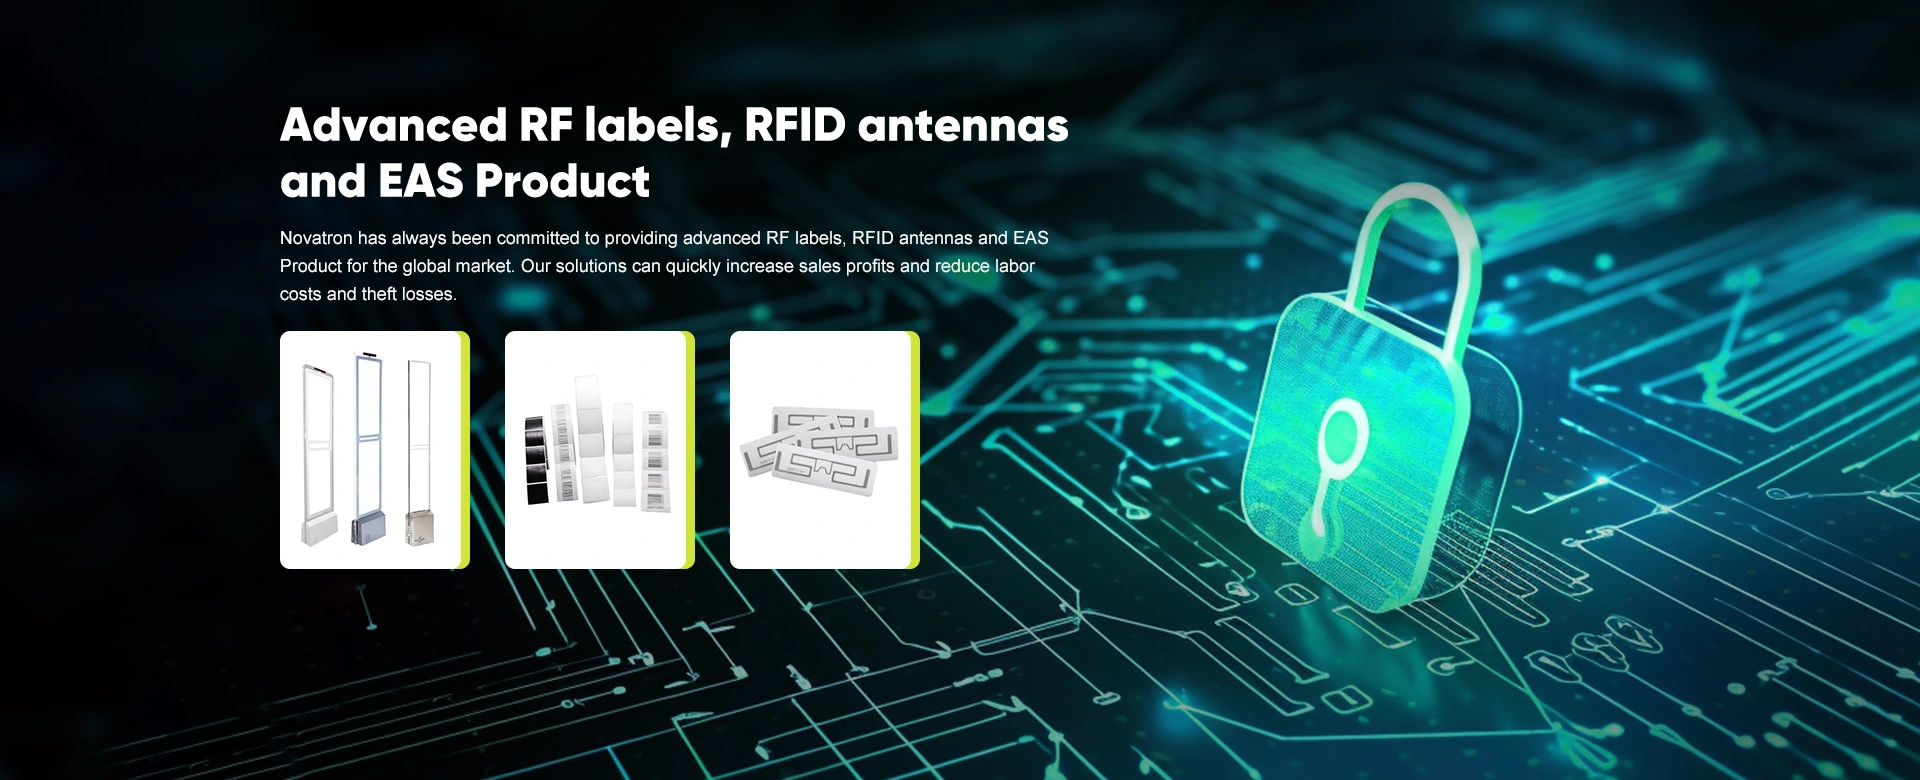 고급 RF 라벨, RFID 안테나 및 EAS 제품